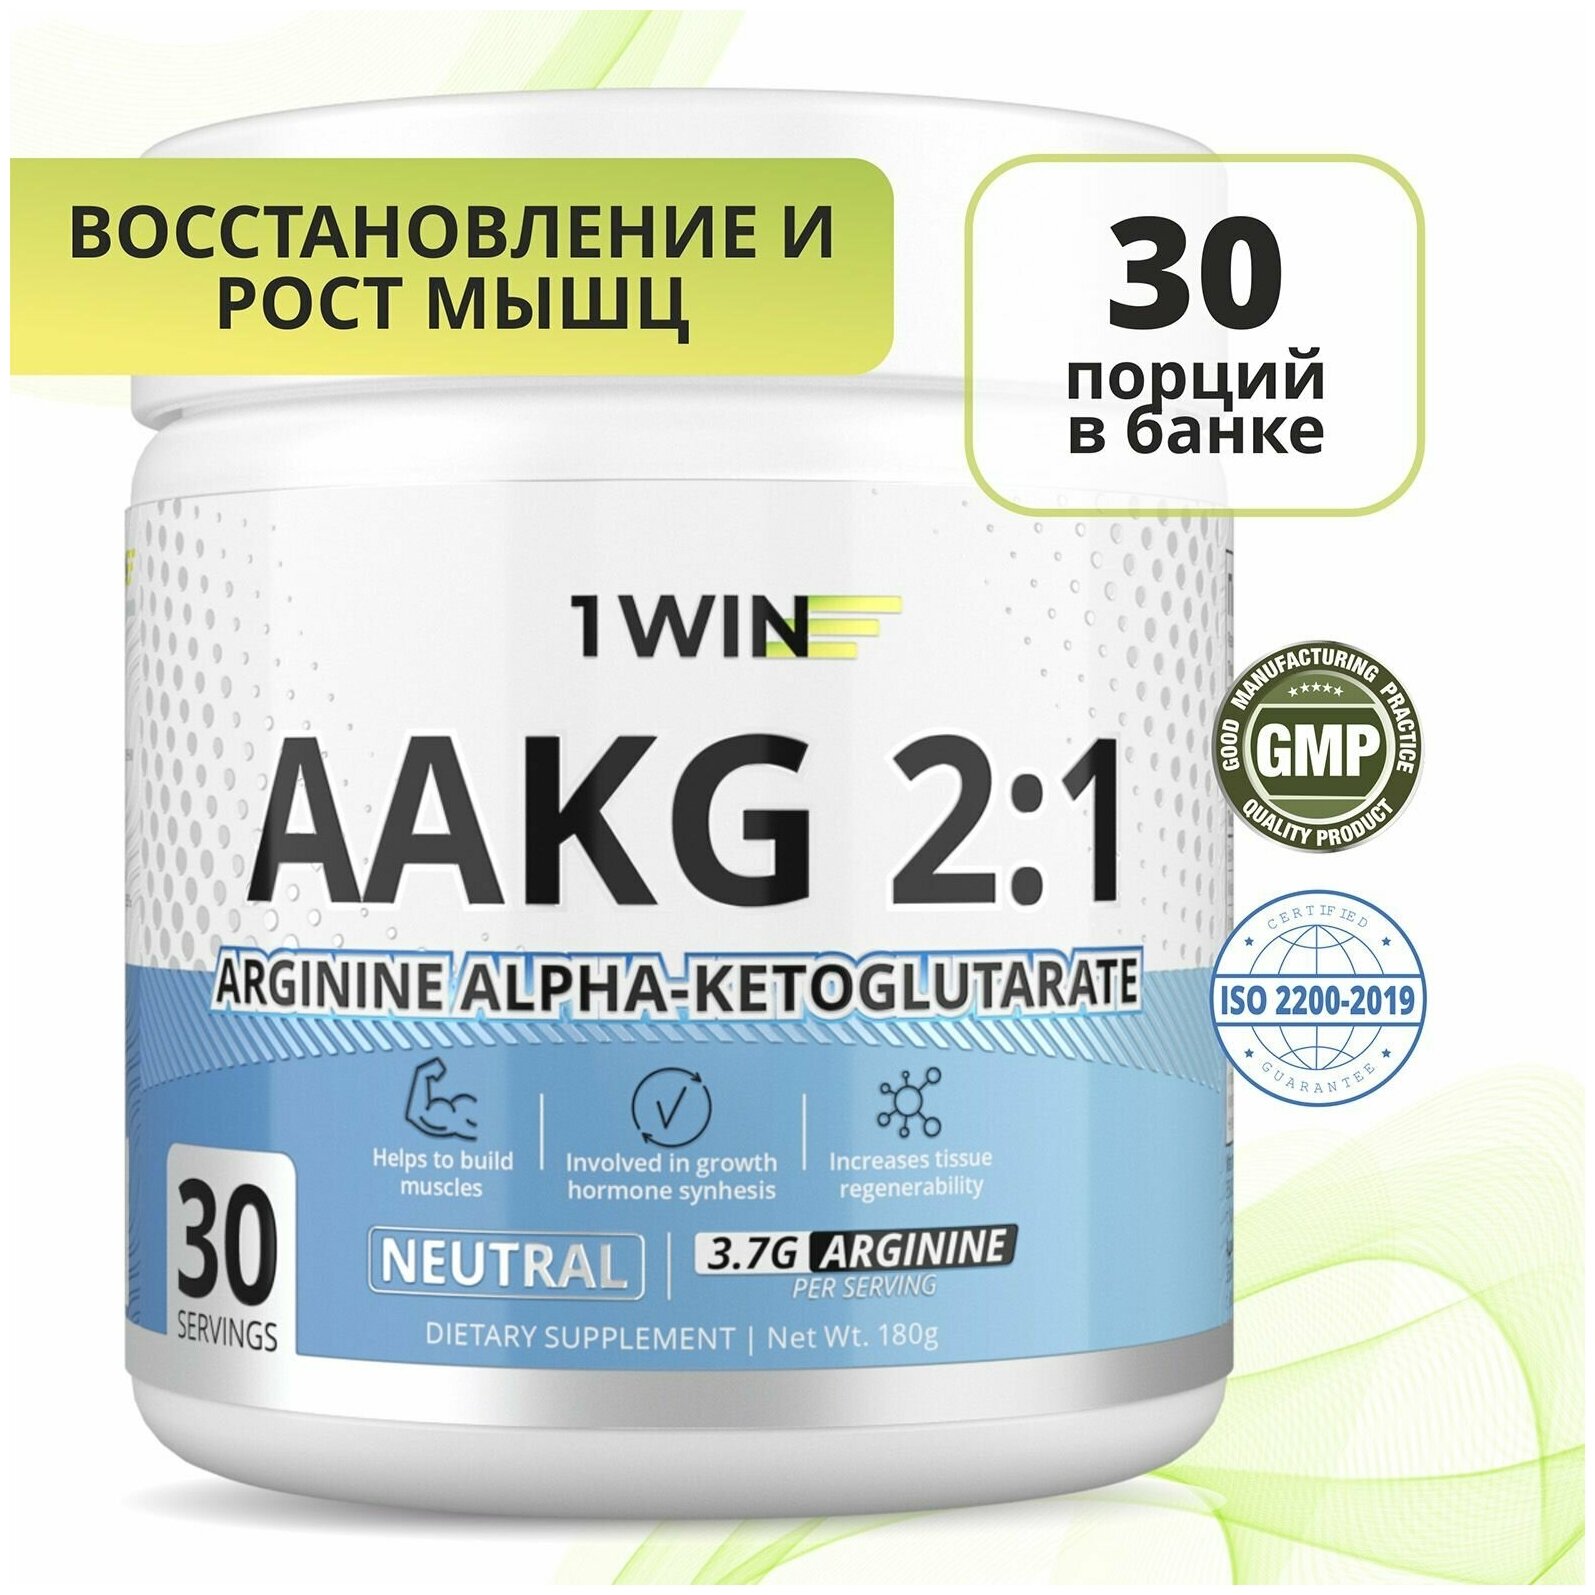 AAKG 2:1 Аминокислоты от 1WIN Аргинин альфа-кетоглутарат аакг , АКГ, нейтральный вкус, 30 порций